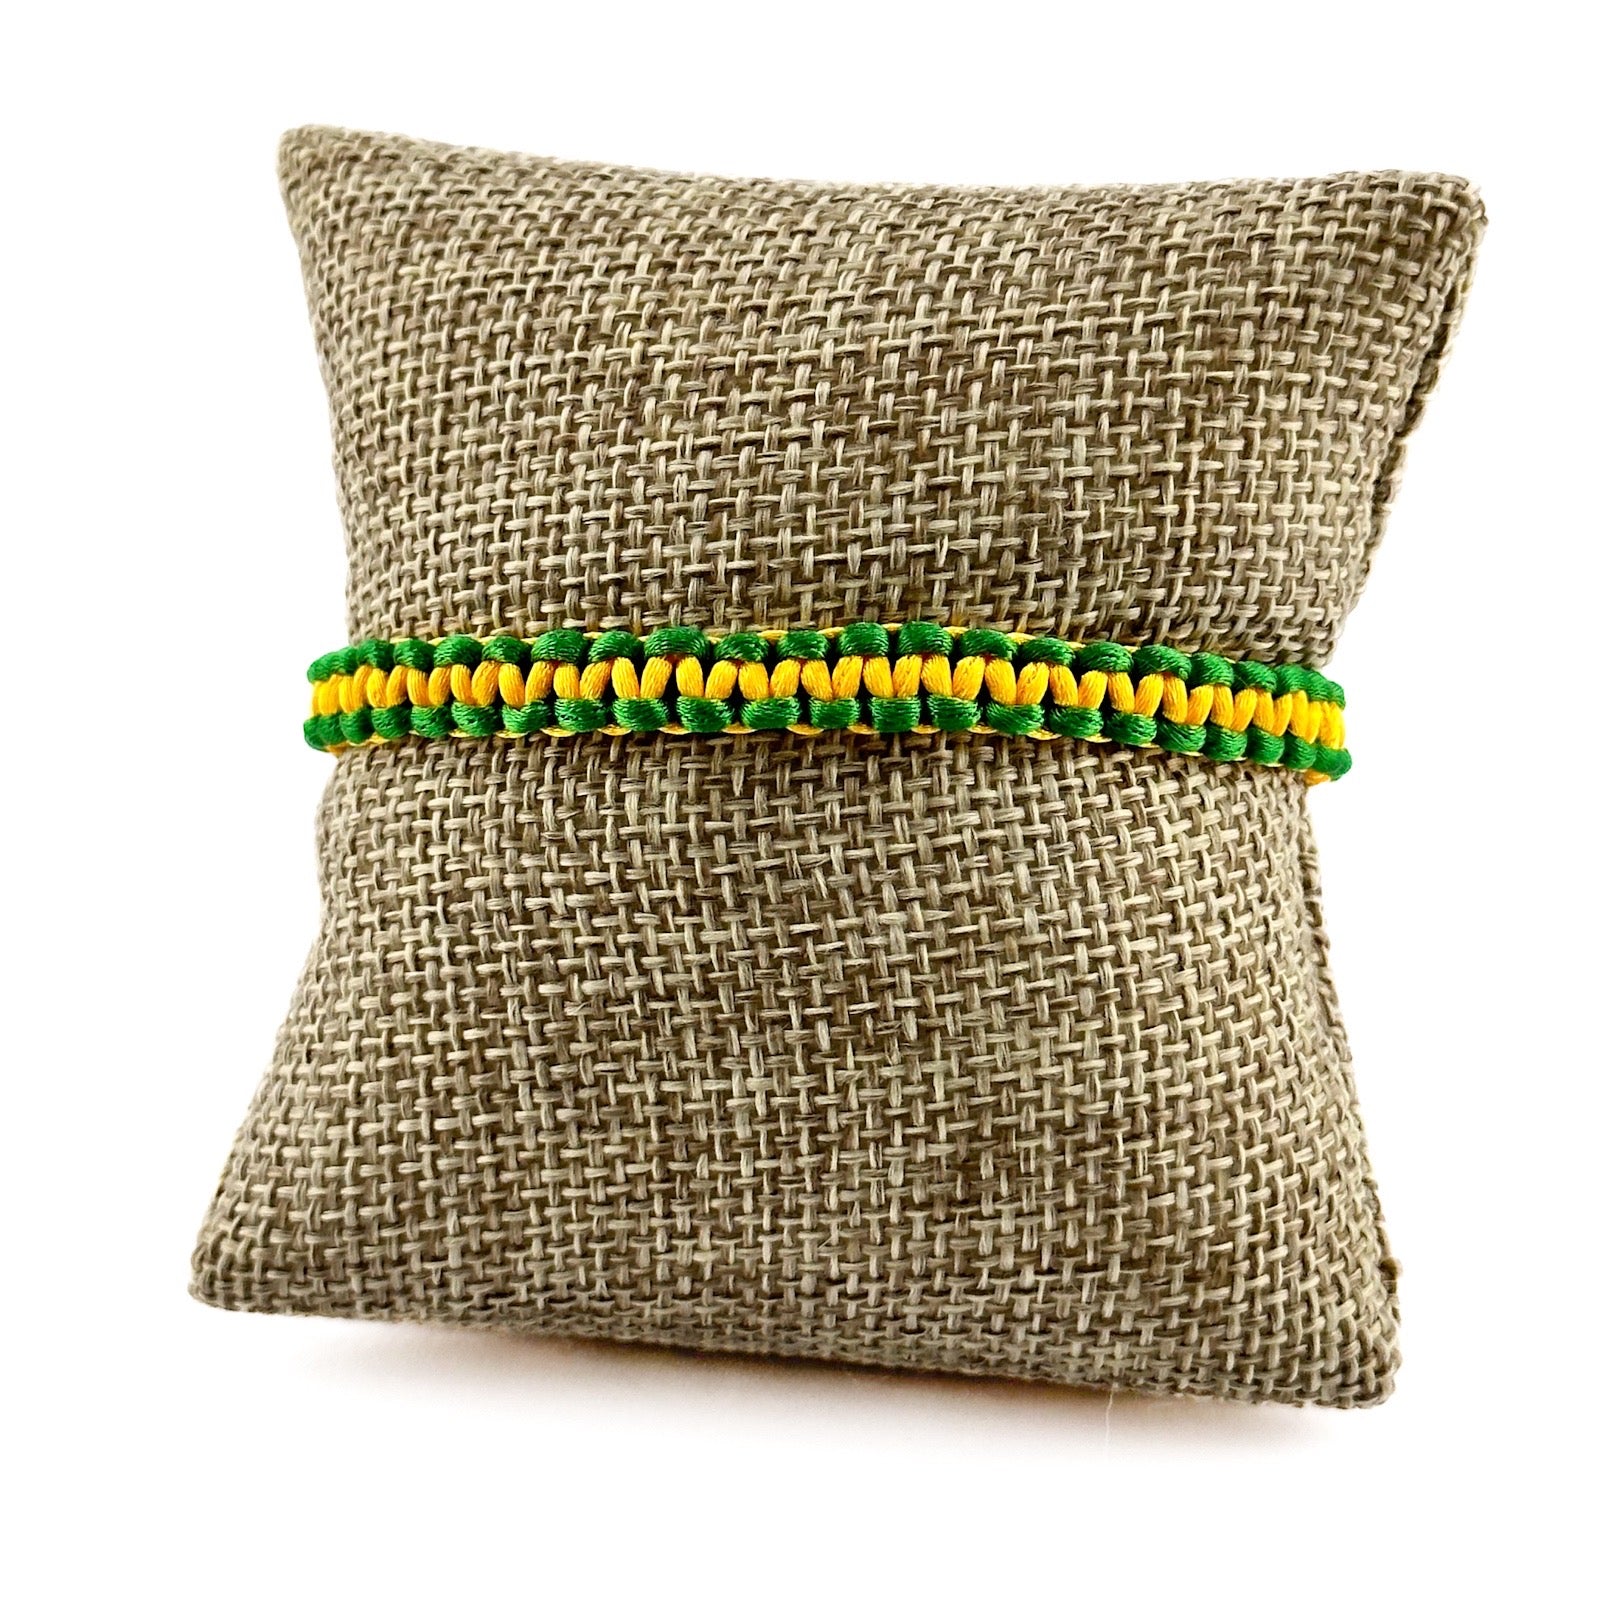 Thea Design Concepts Braided Jamaican Flag Color Wrap Adjustable Bracelet for Men Women- front view